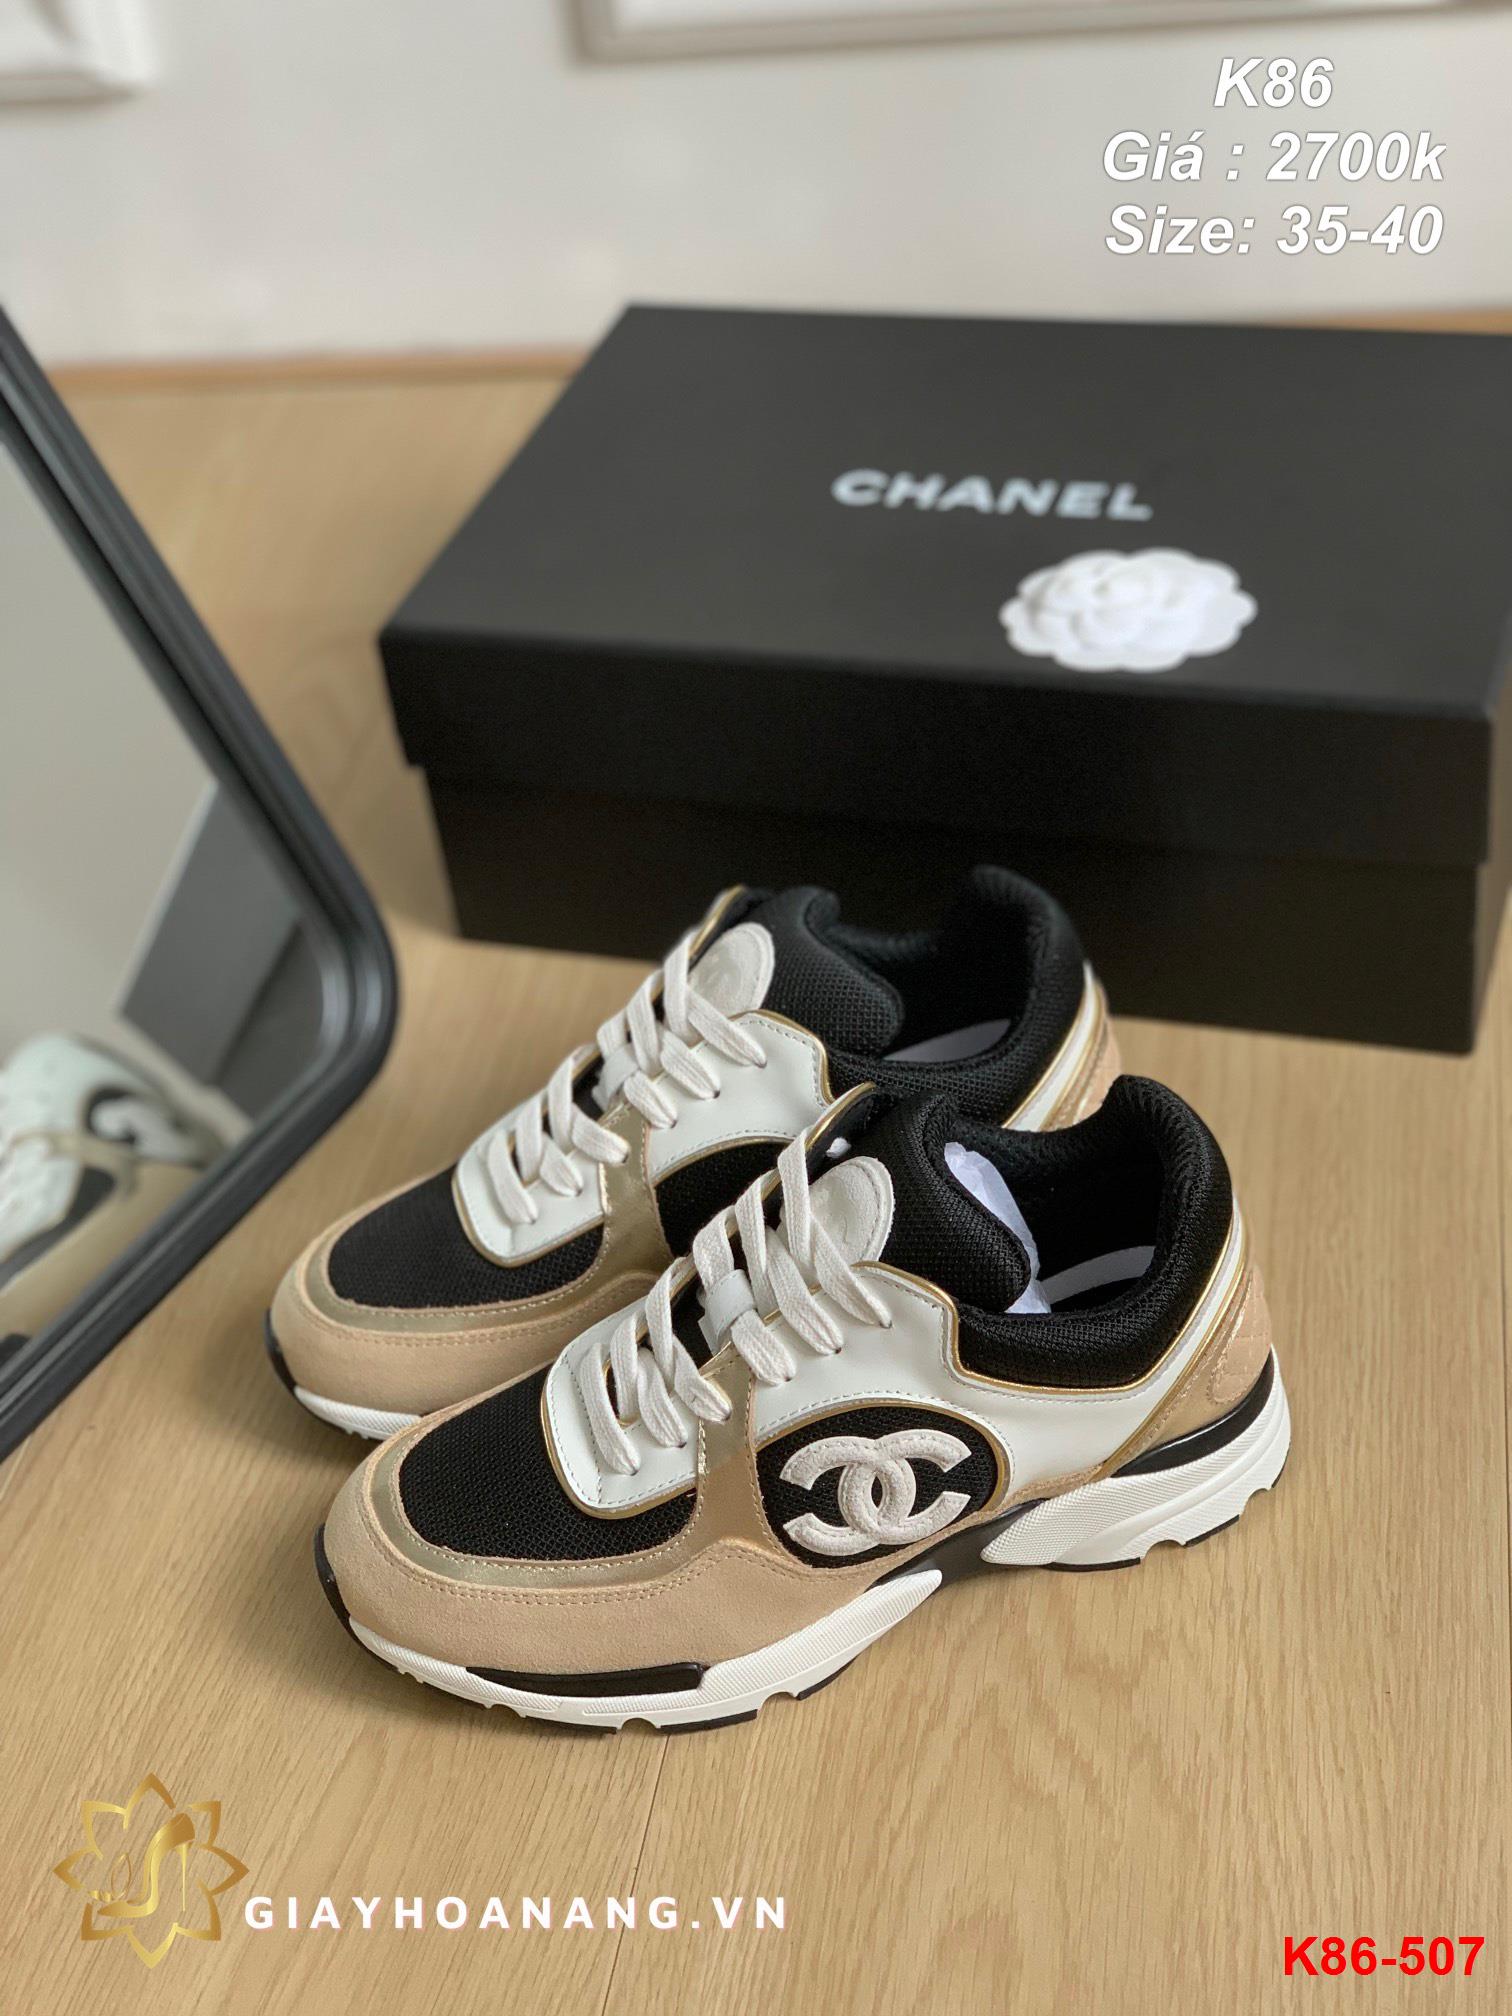 K86-507 Chanel giày thể thao siêu cấp